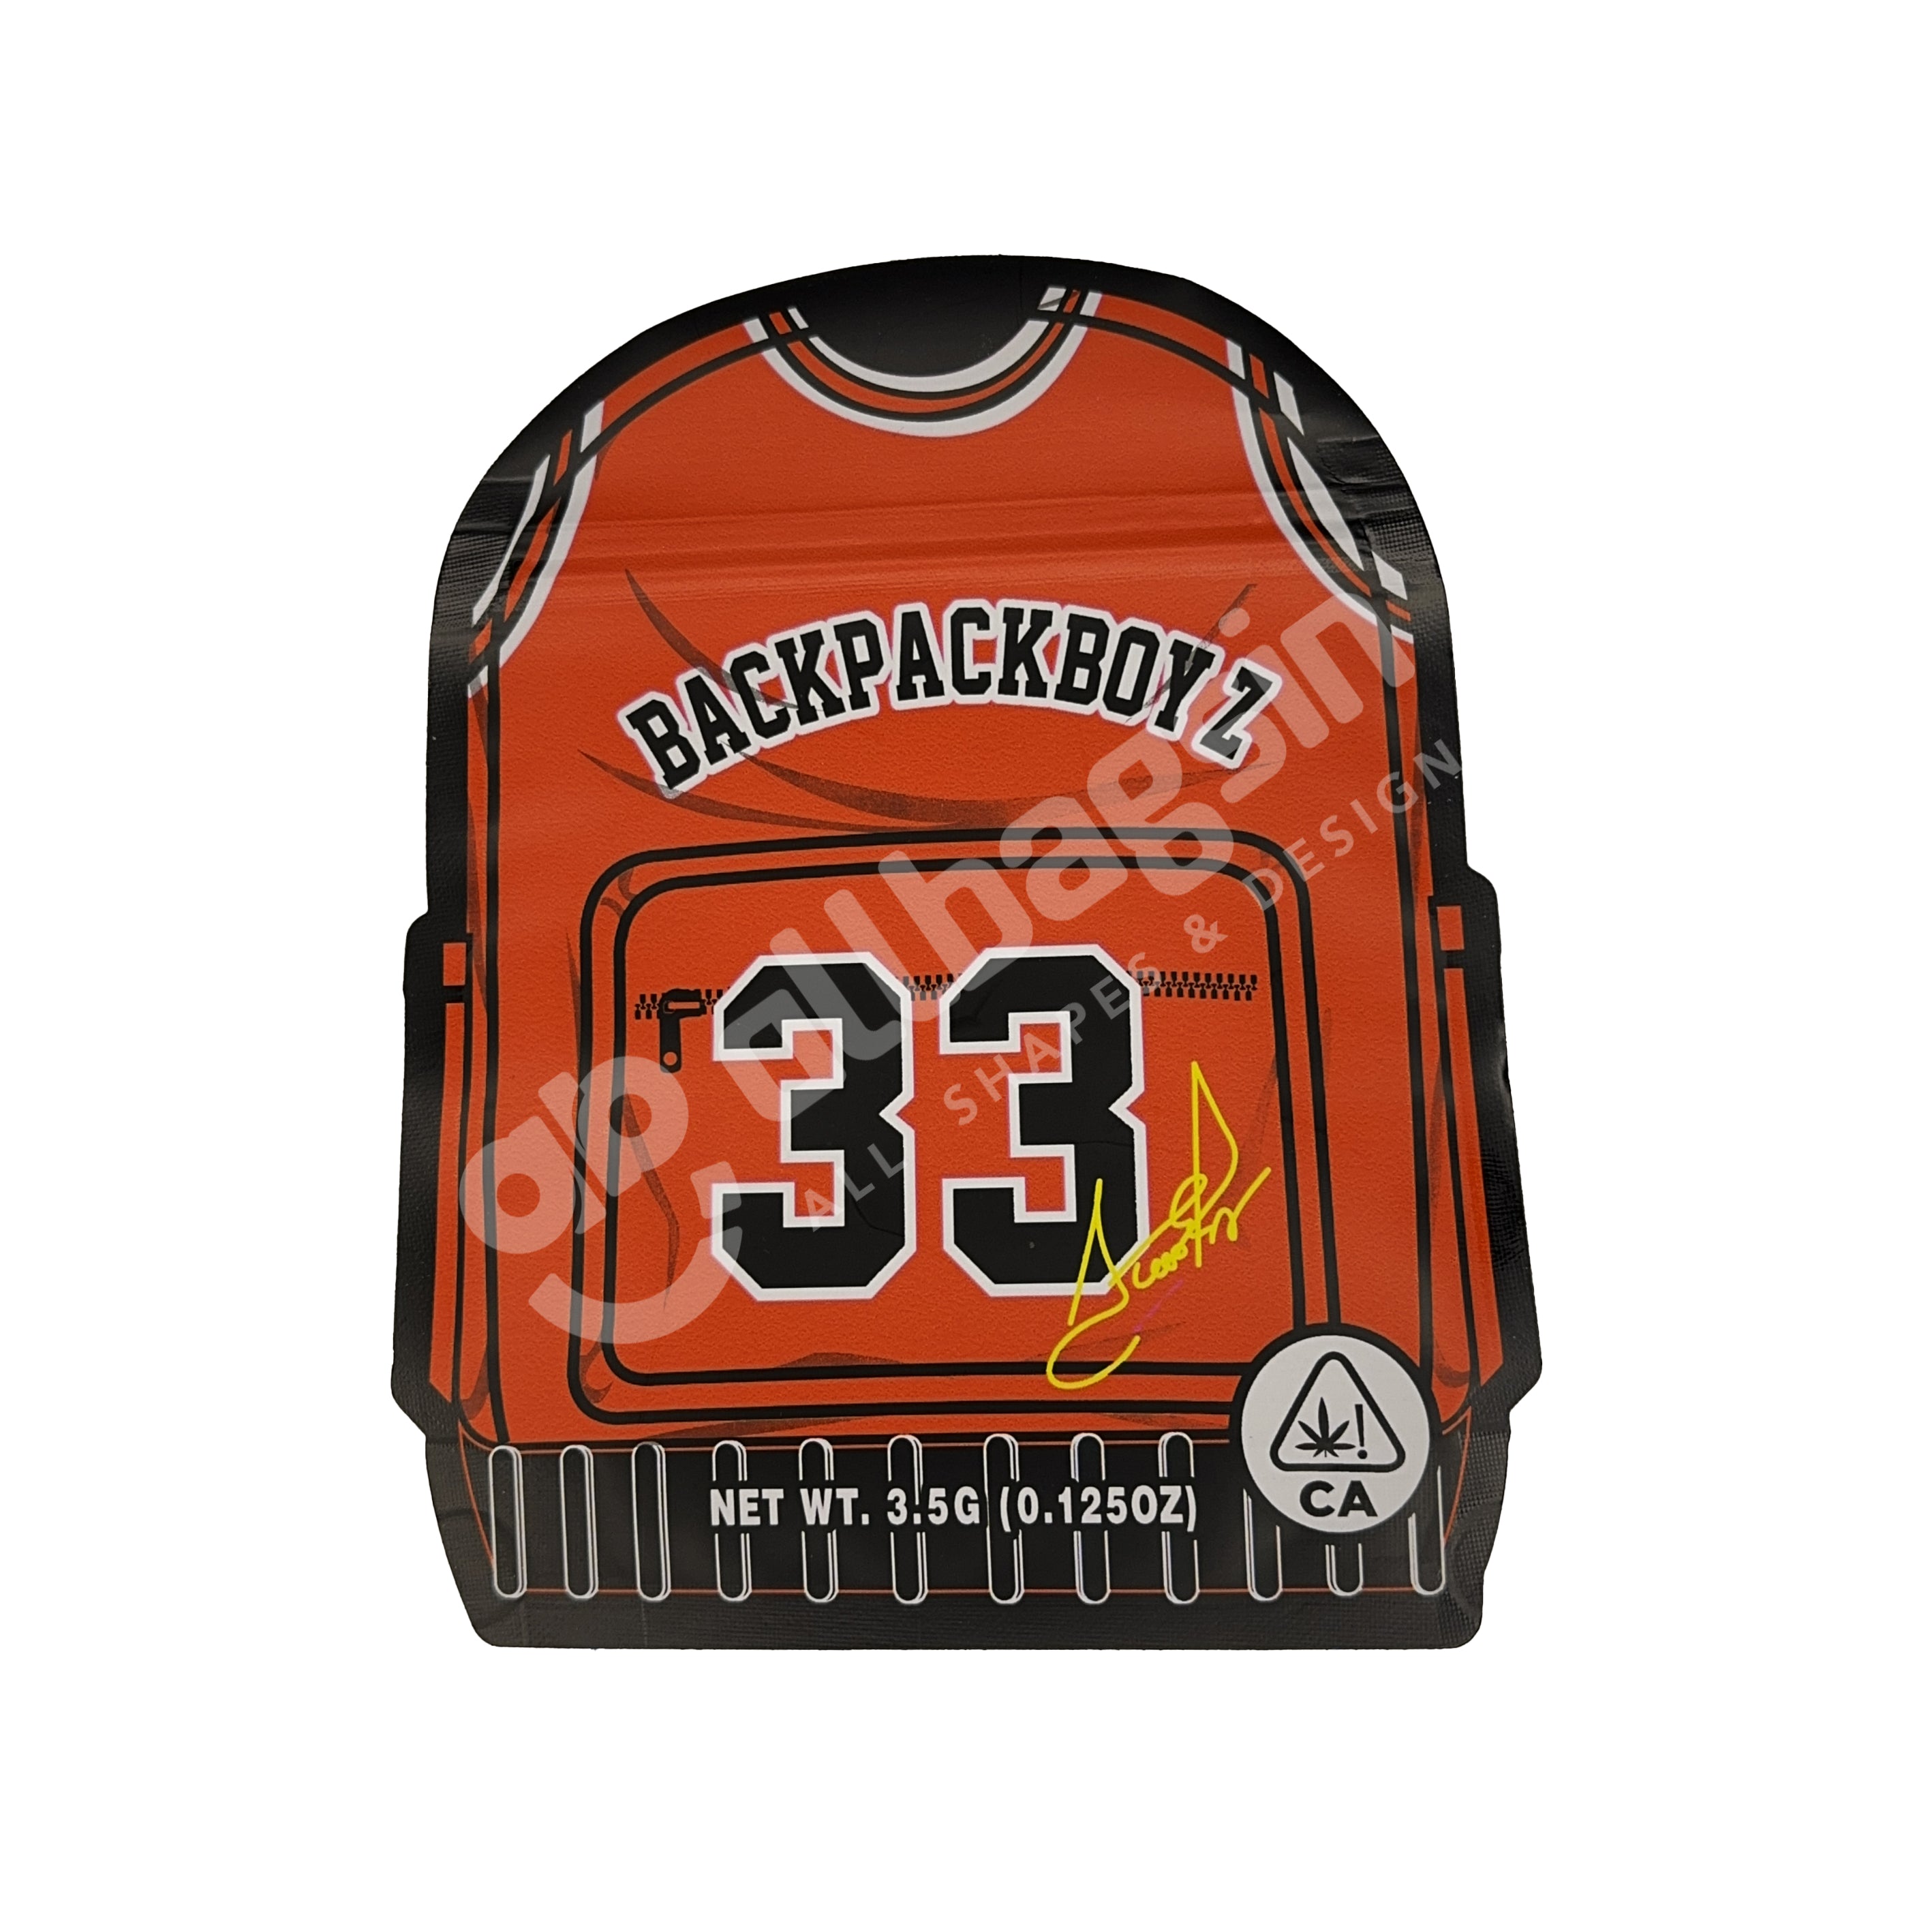 Backpackboyz 33 Die Cut 3.5G Mylar Bags